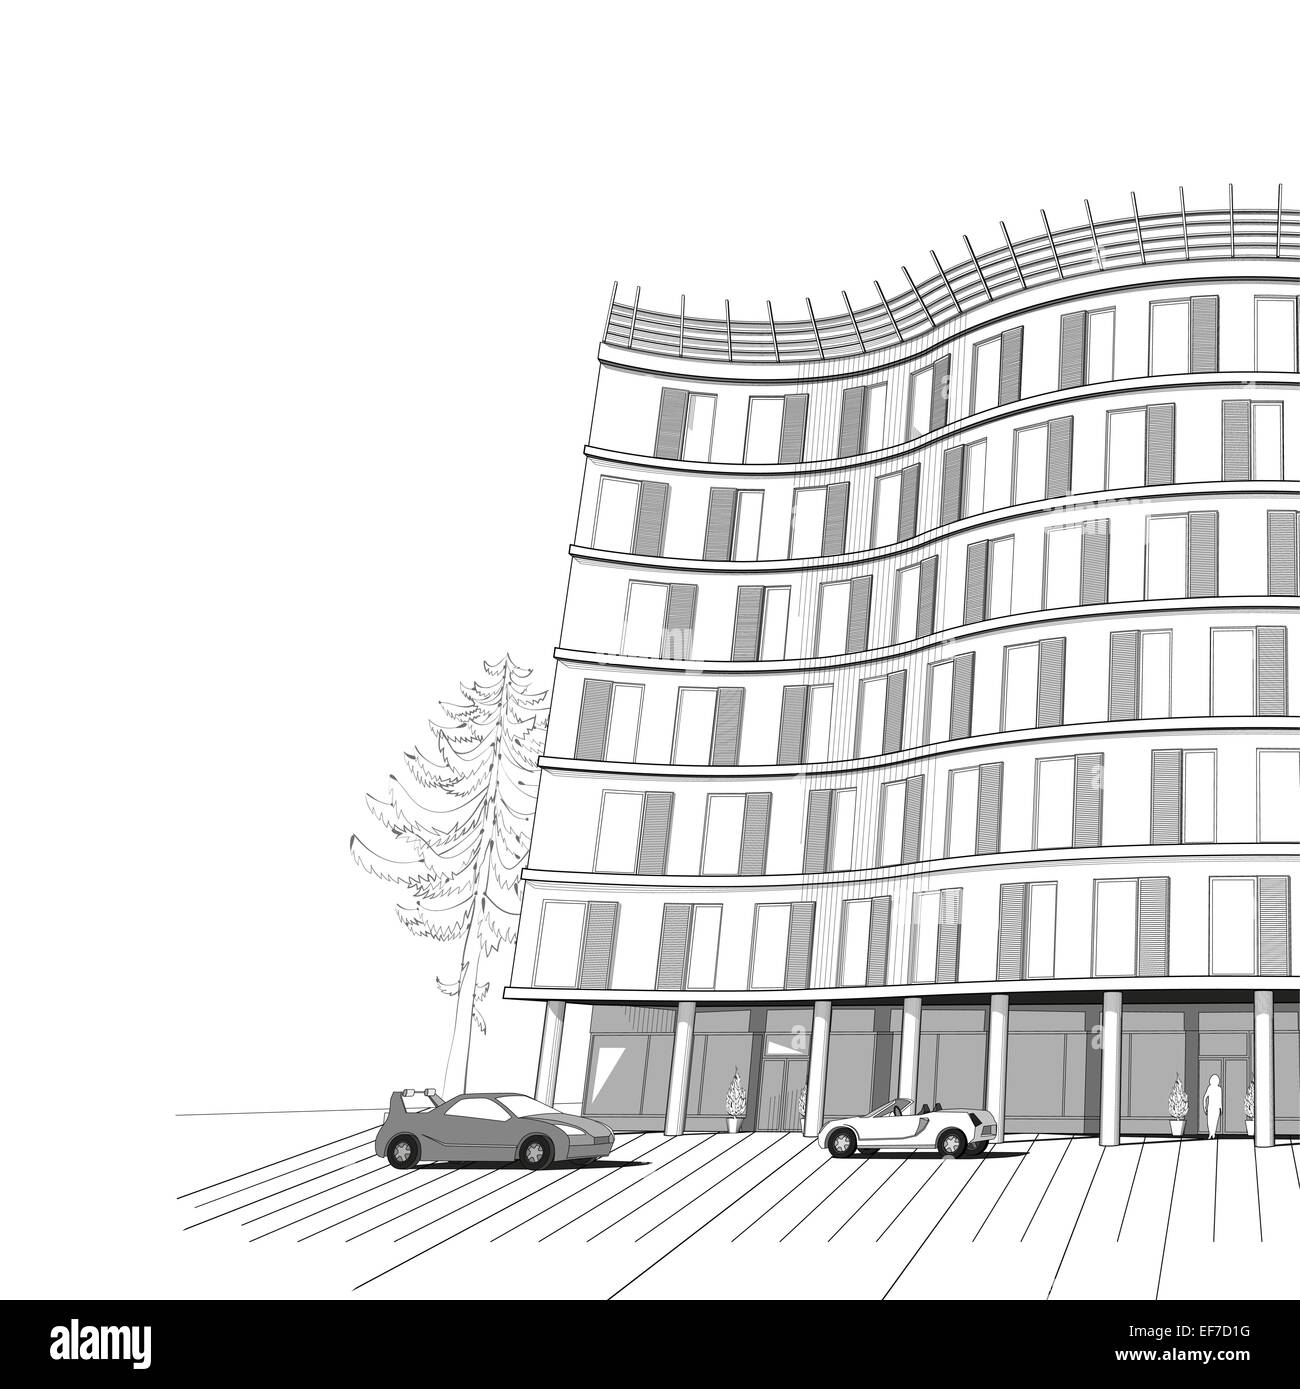 Architecture vecteur fond noir et blanc avec appartement moderne ou bureau immeuble de plusieurs étages Illustration de Vecteur